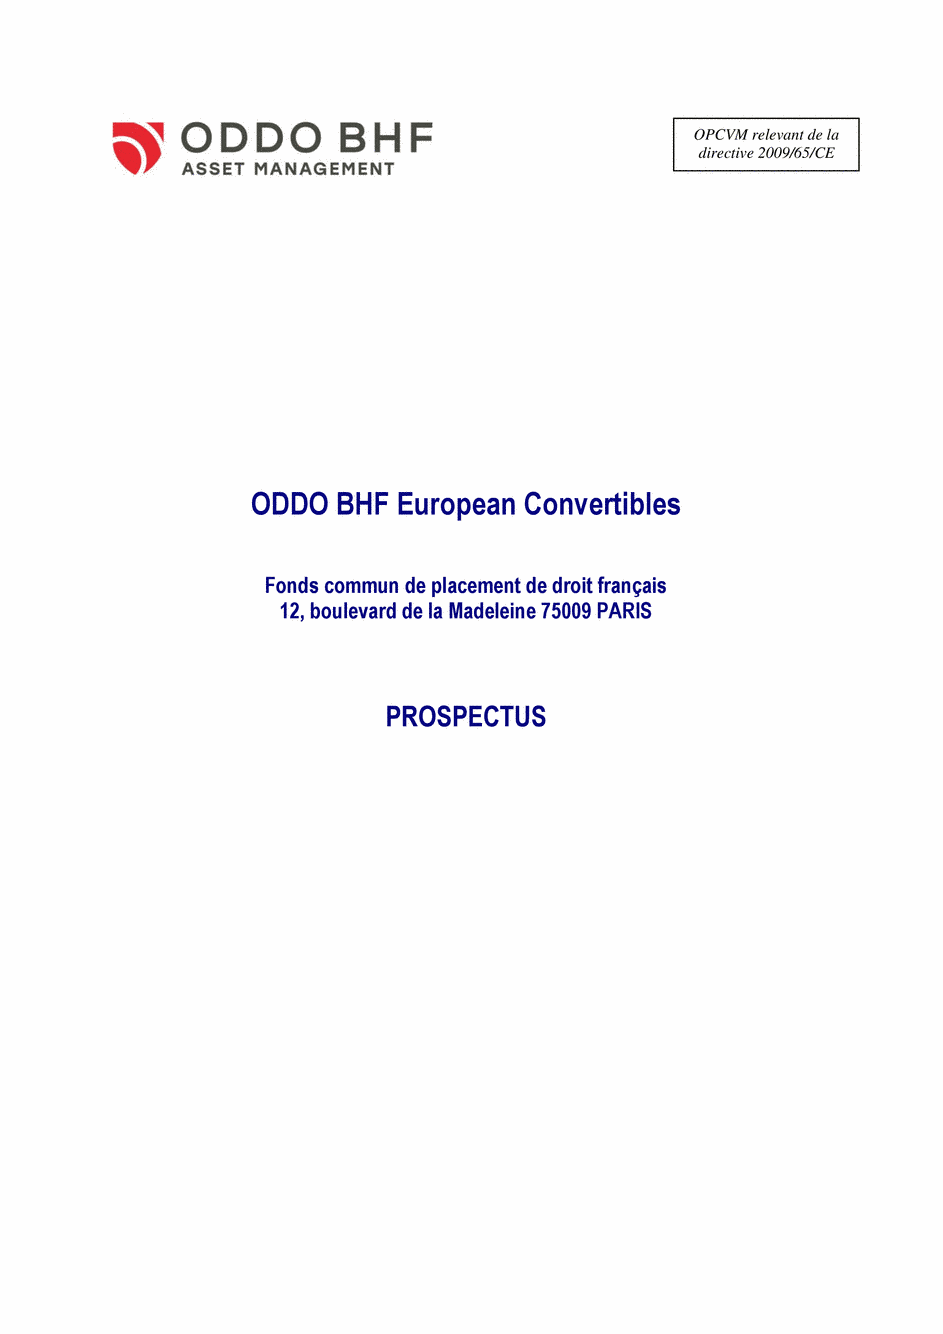 Prospectus ODDO BHF EUROPEAN CONVERTIBLES CR-EUR - 24/08/2020 - Français